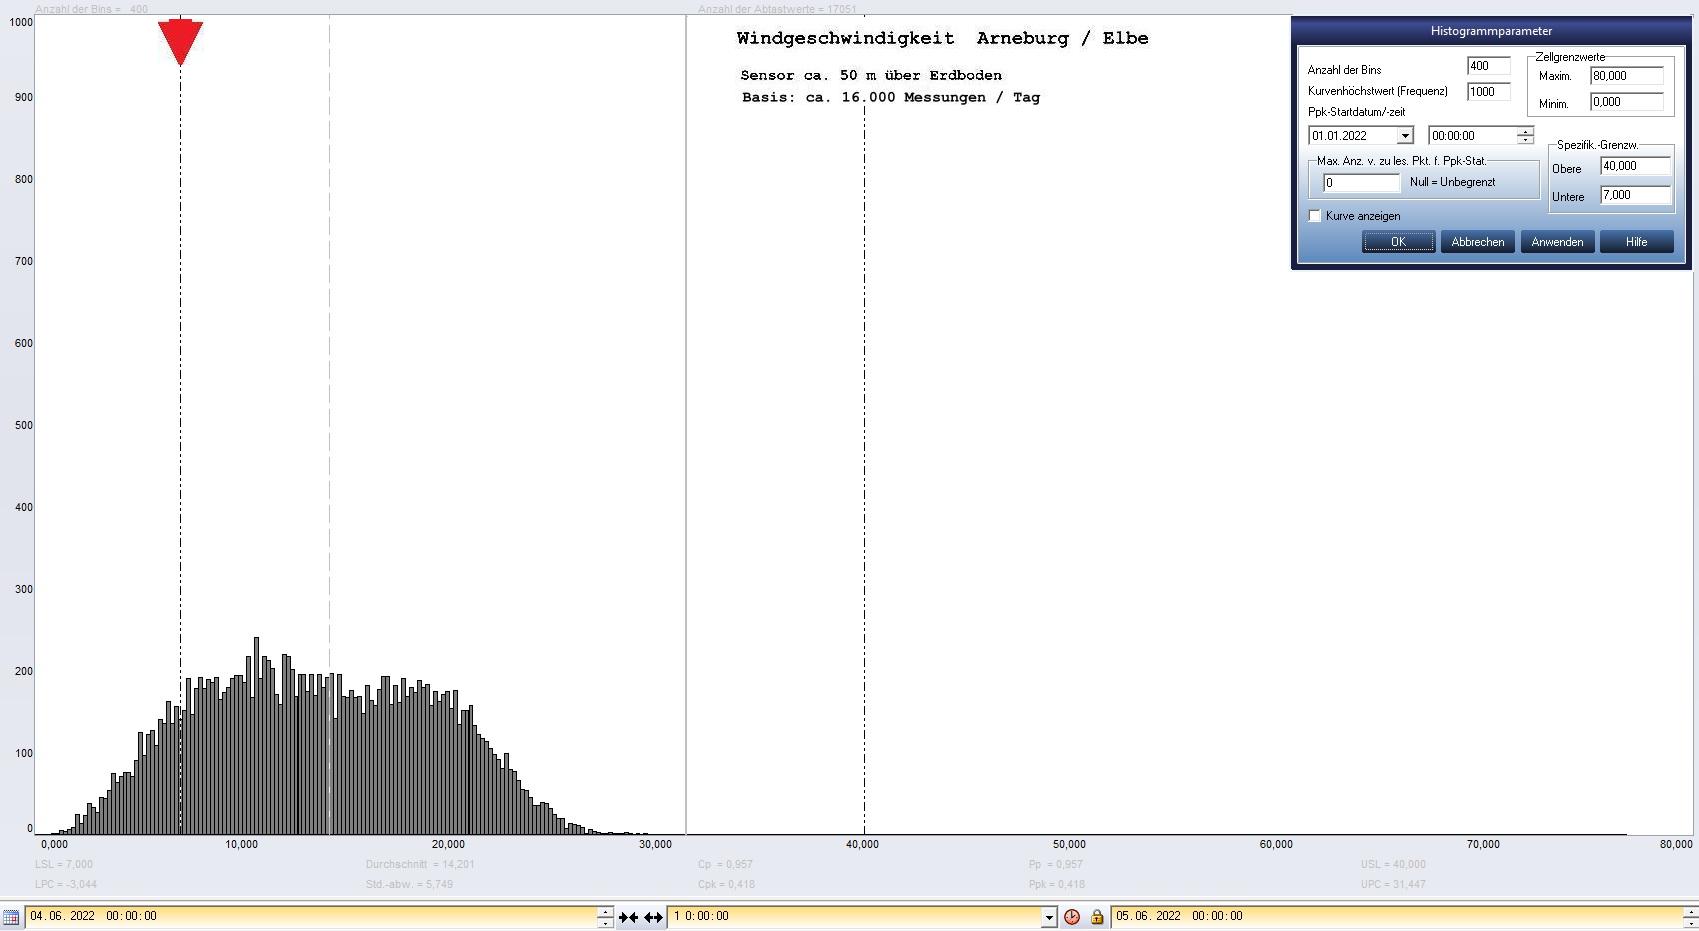 Arneburg Tages-Histogramm Winddaten, 04.06.2022
  Histogramm, Sensor auf Gebude, ca. 50 m ber Erdboden, Basis: 5s-Aufzeichnung